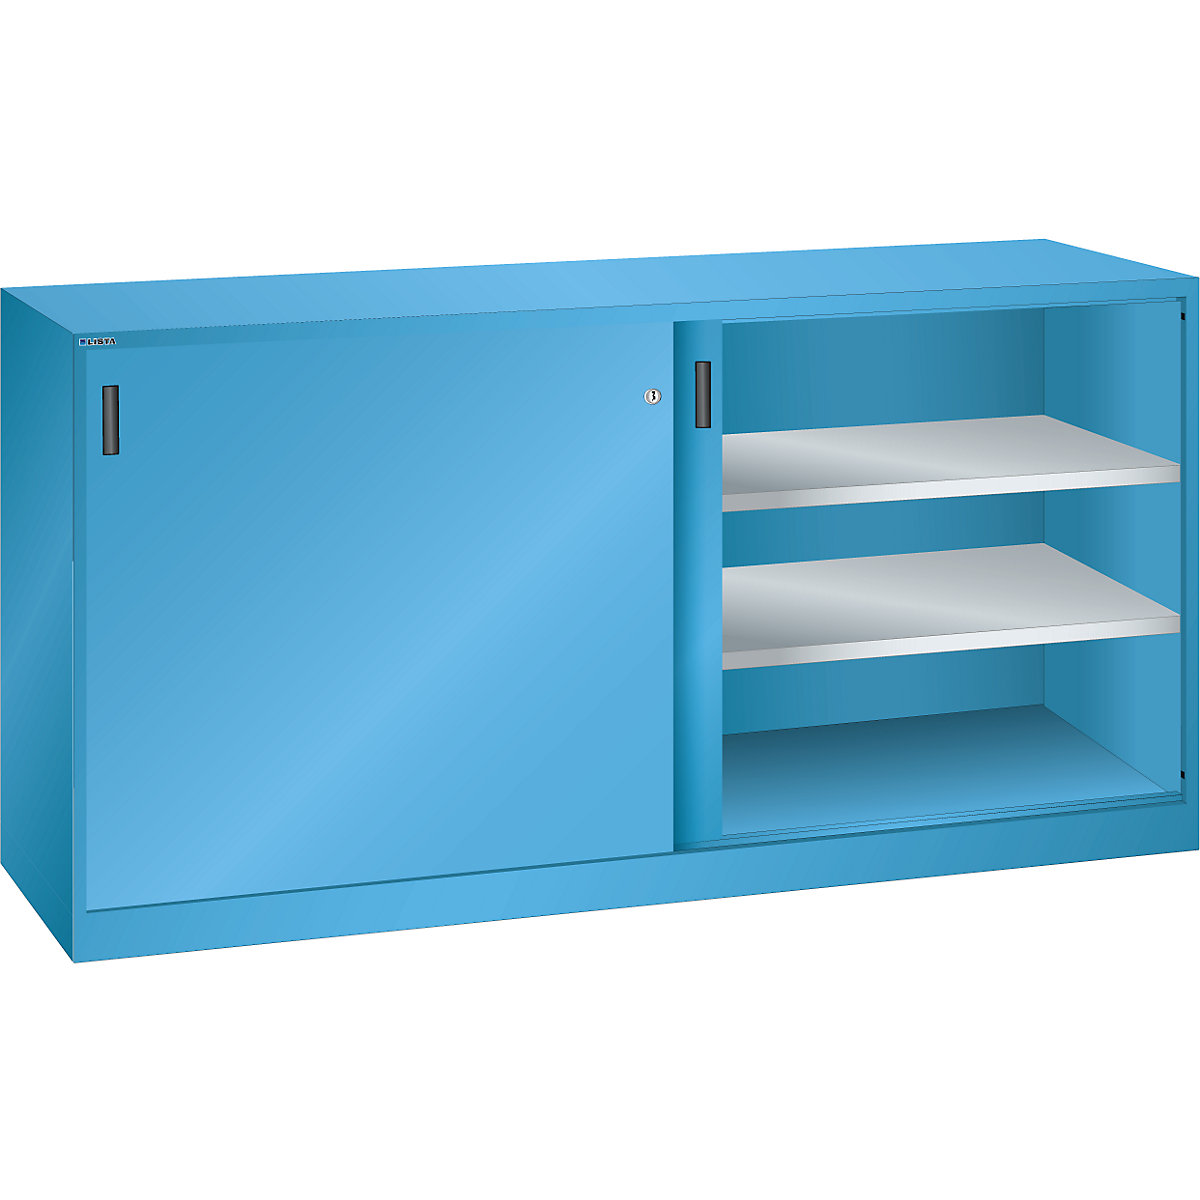 Sliding door cupboard with solid panel doors – LISTA, 4 shelves, light blue-8